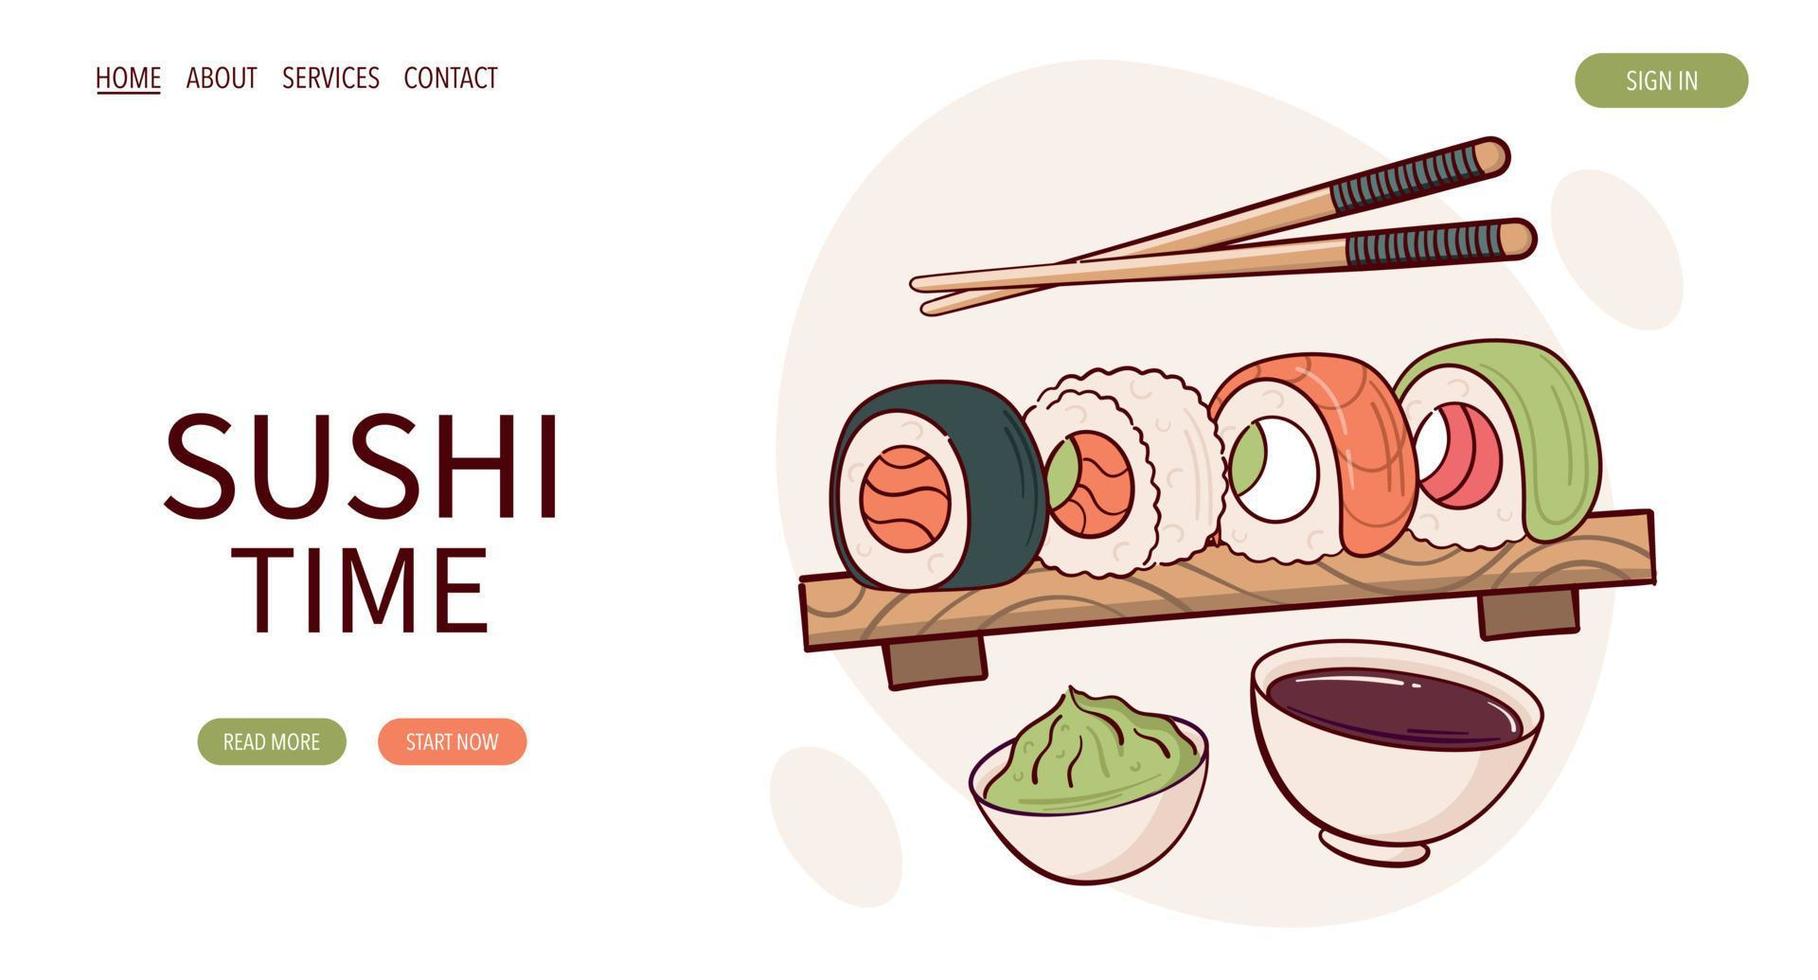 página web desenhar ilustração vetorial de rolo de sushi nigiri. comida tradicional asiática japonesa, culinária, conceito de menu. banner, site, publicidade em estilo cartoon doodle.. vetor